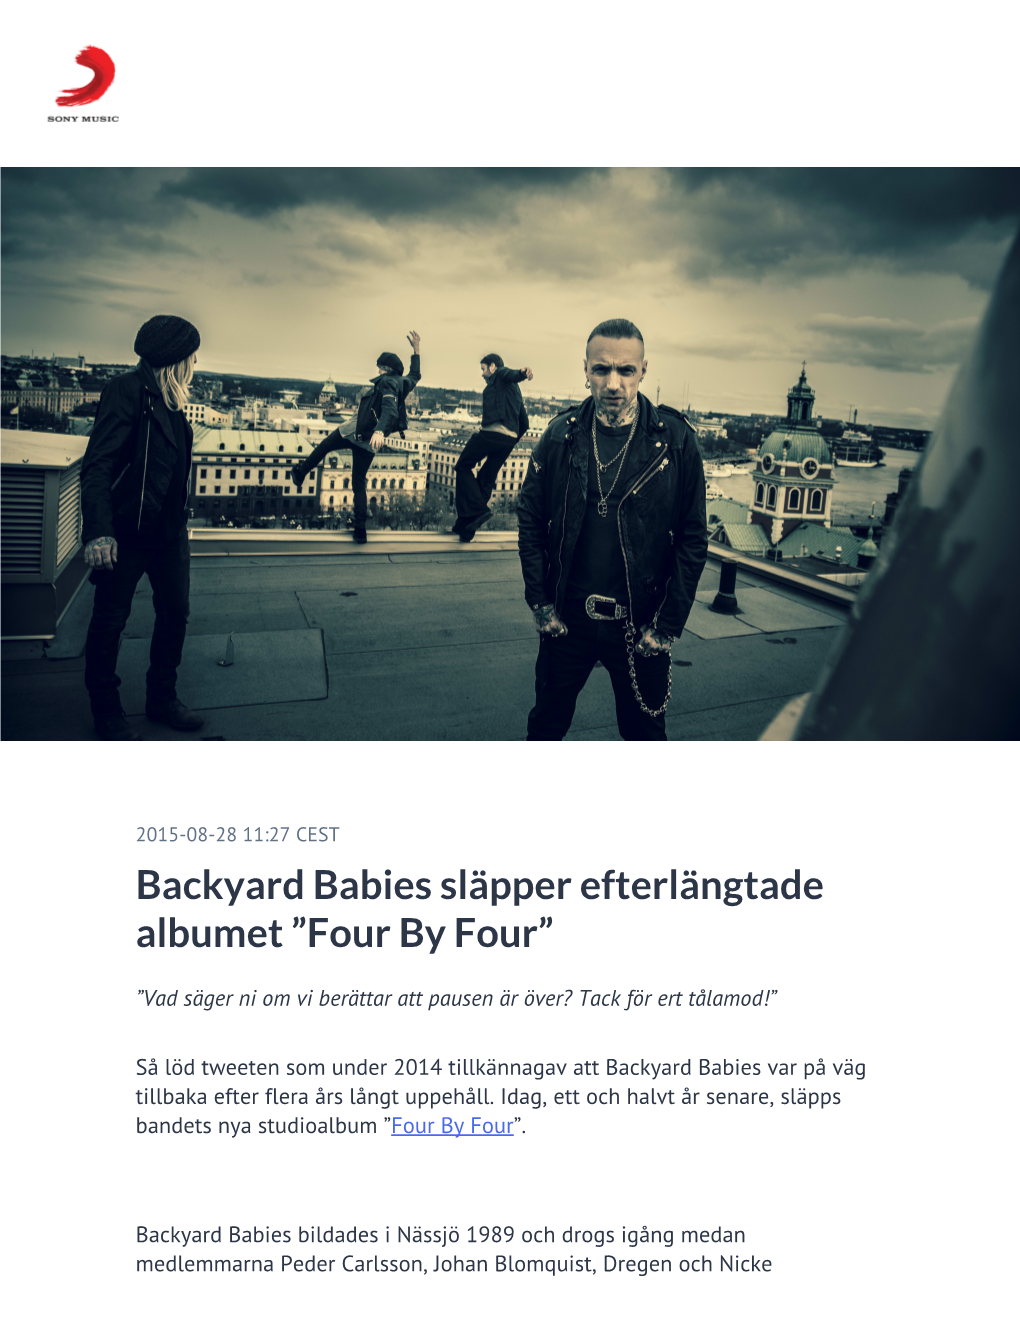 ​Backyard Babies Släpper Efterlängtade Albumet ”Four by Four”